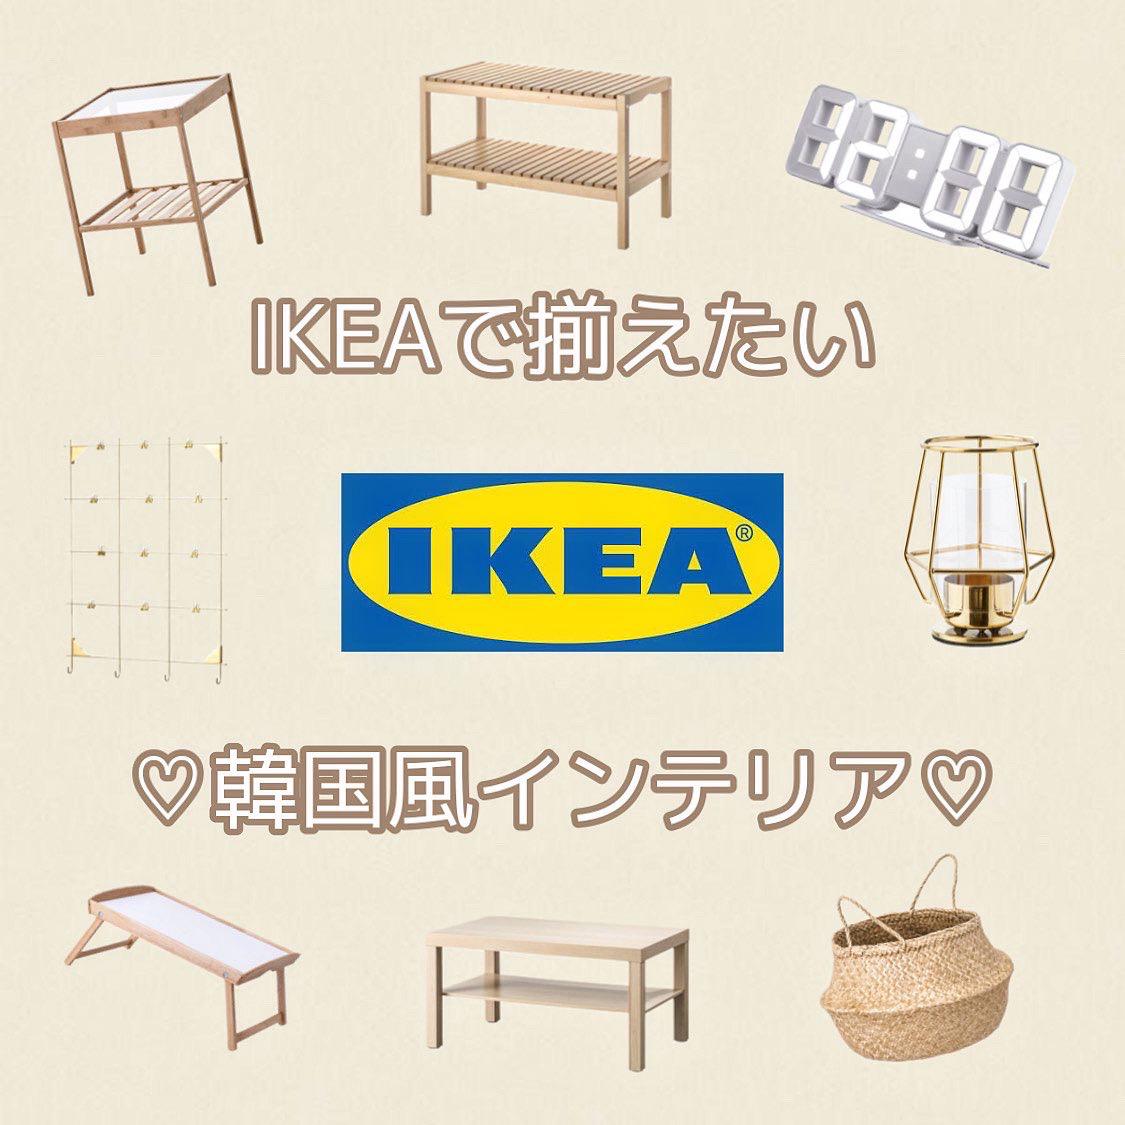 Ikeaで揃えたい韓国風インテリア 𓂃 𓈒𓏸 Y Cafe15が投稿したフォトブック Sharee